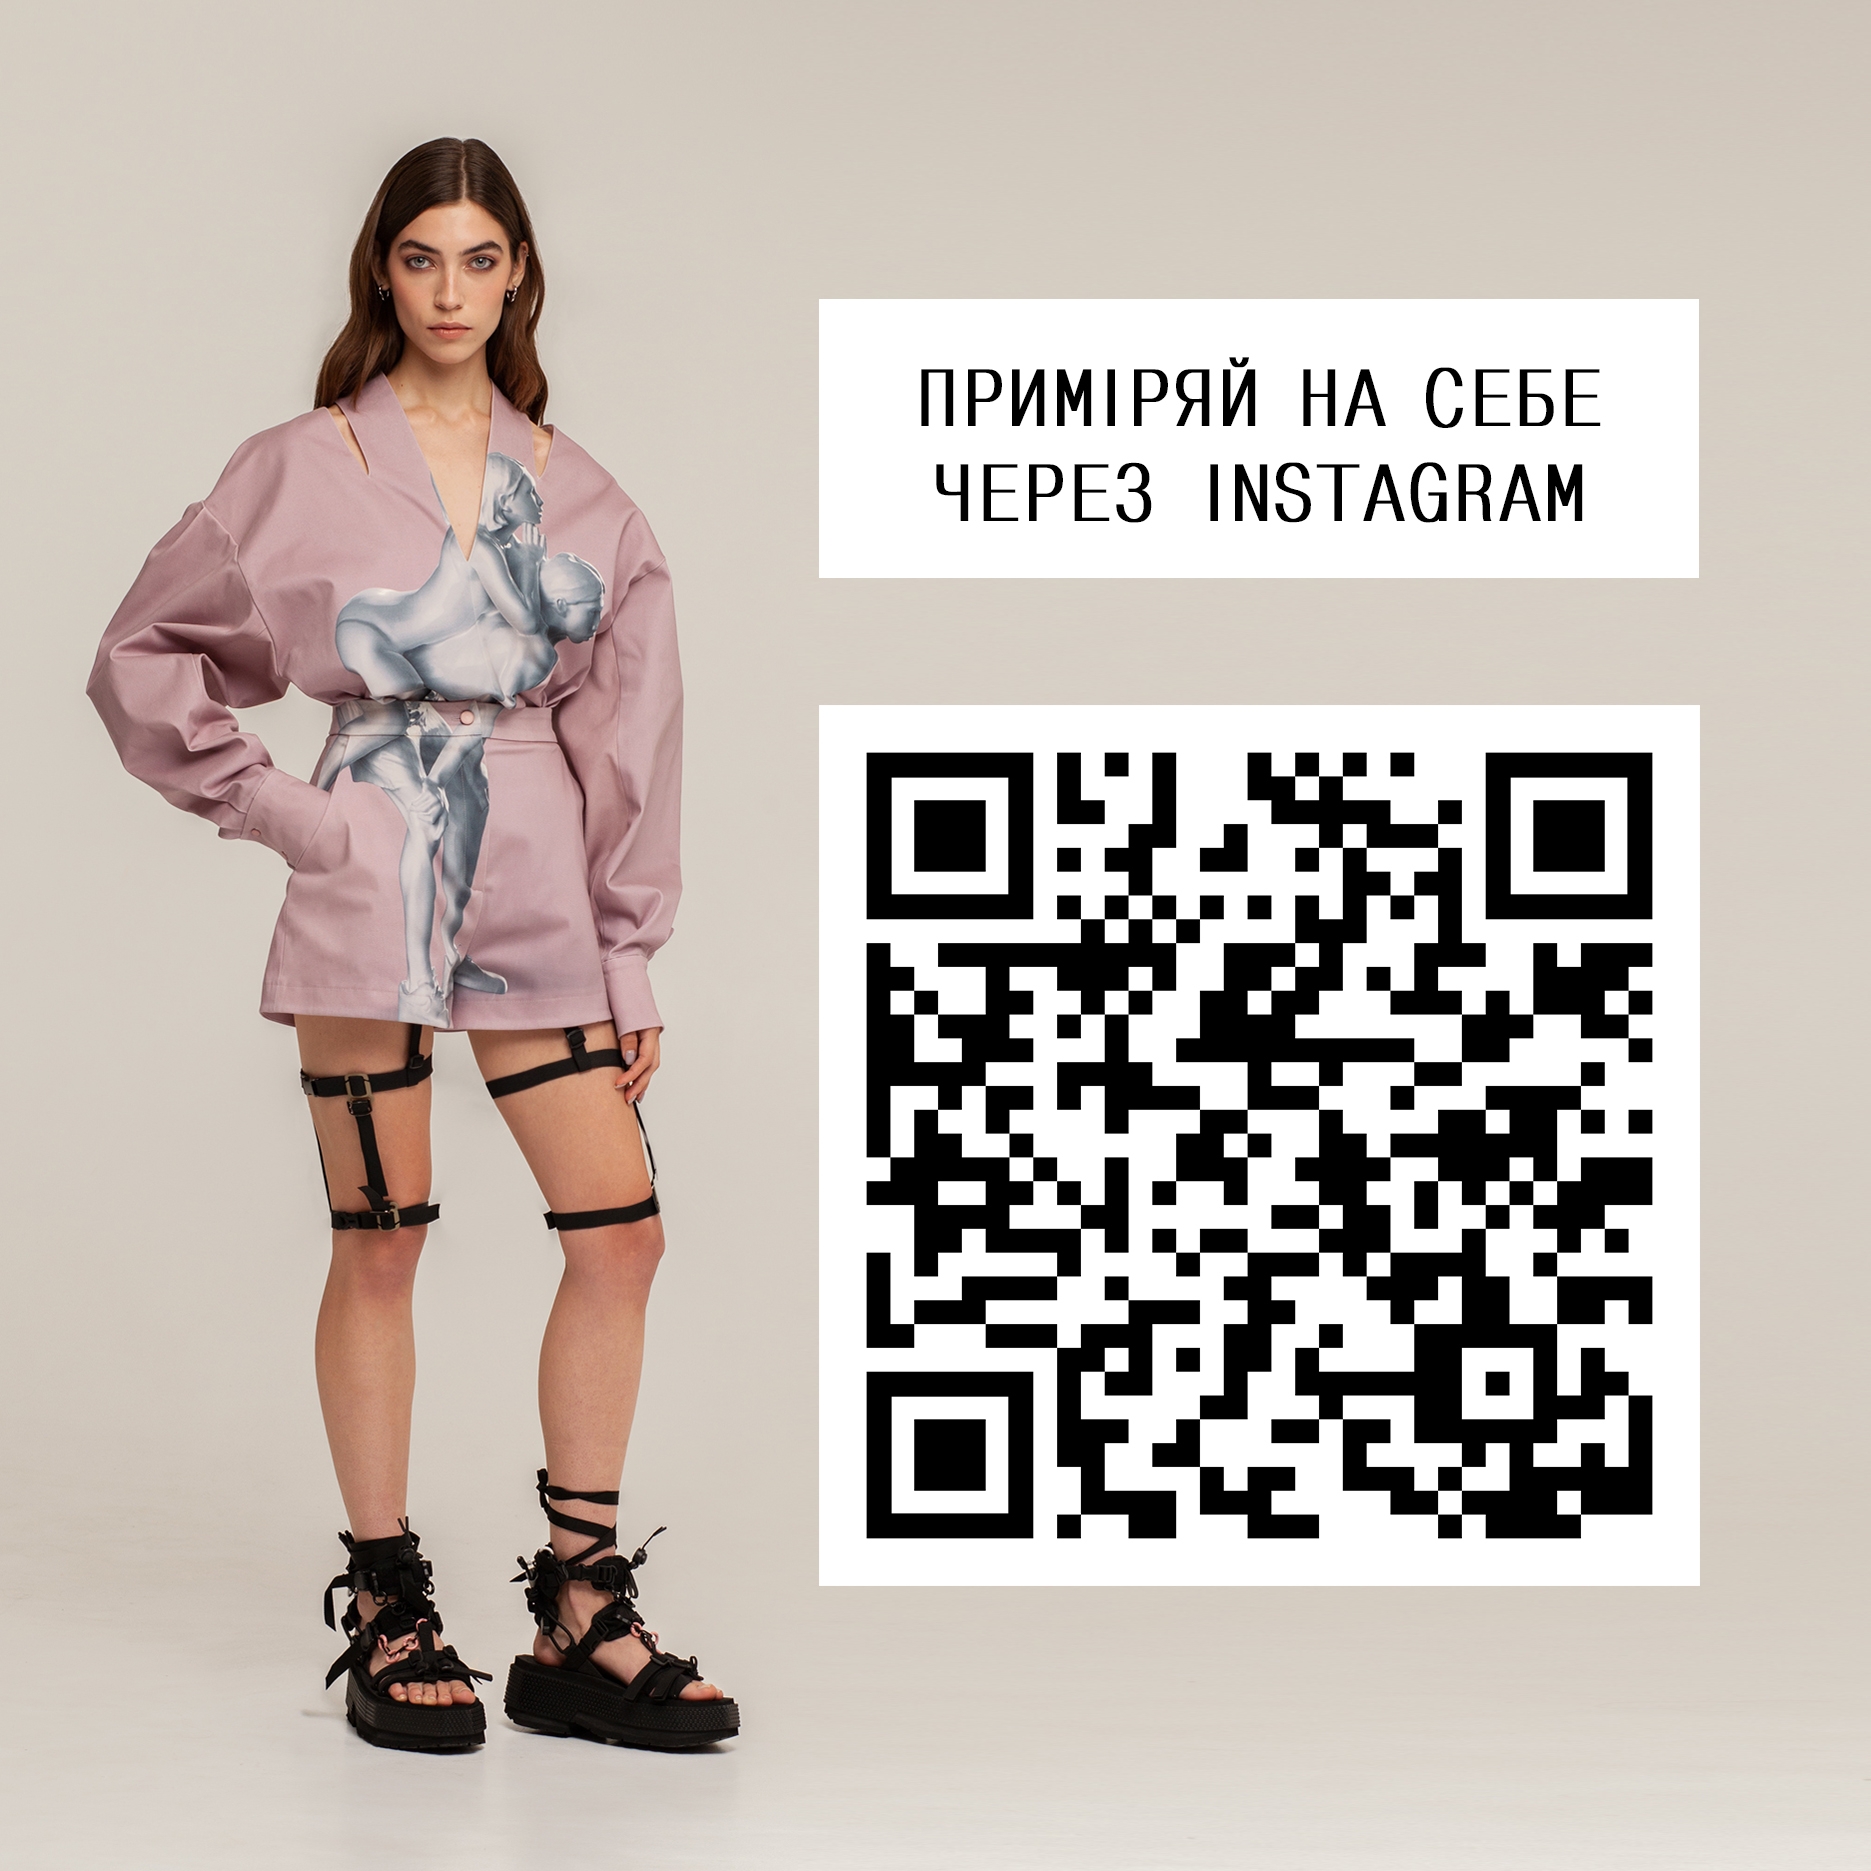 Український бренд одягу FINCH представляє лукбук першого в світі імерсивного модного шоу - фото №2